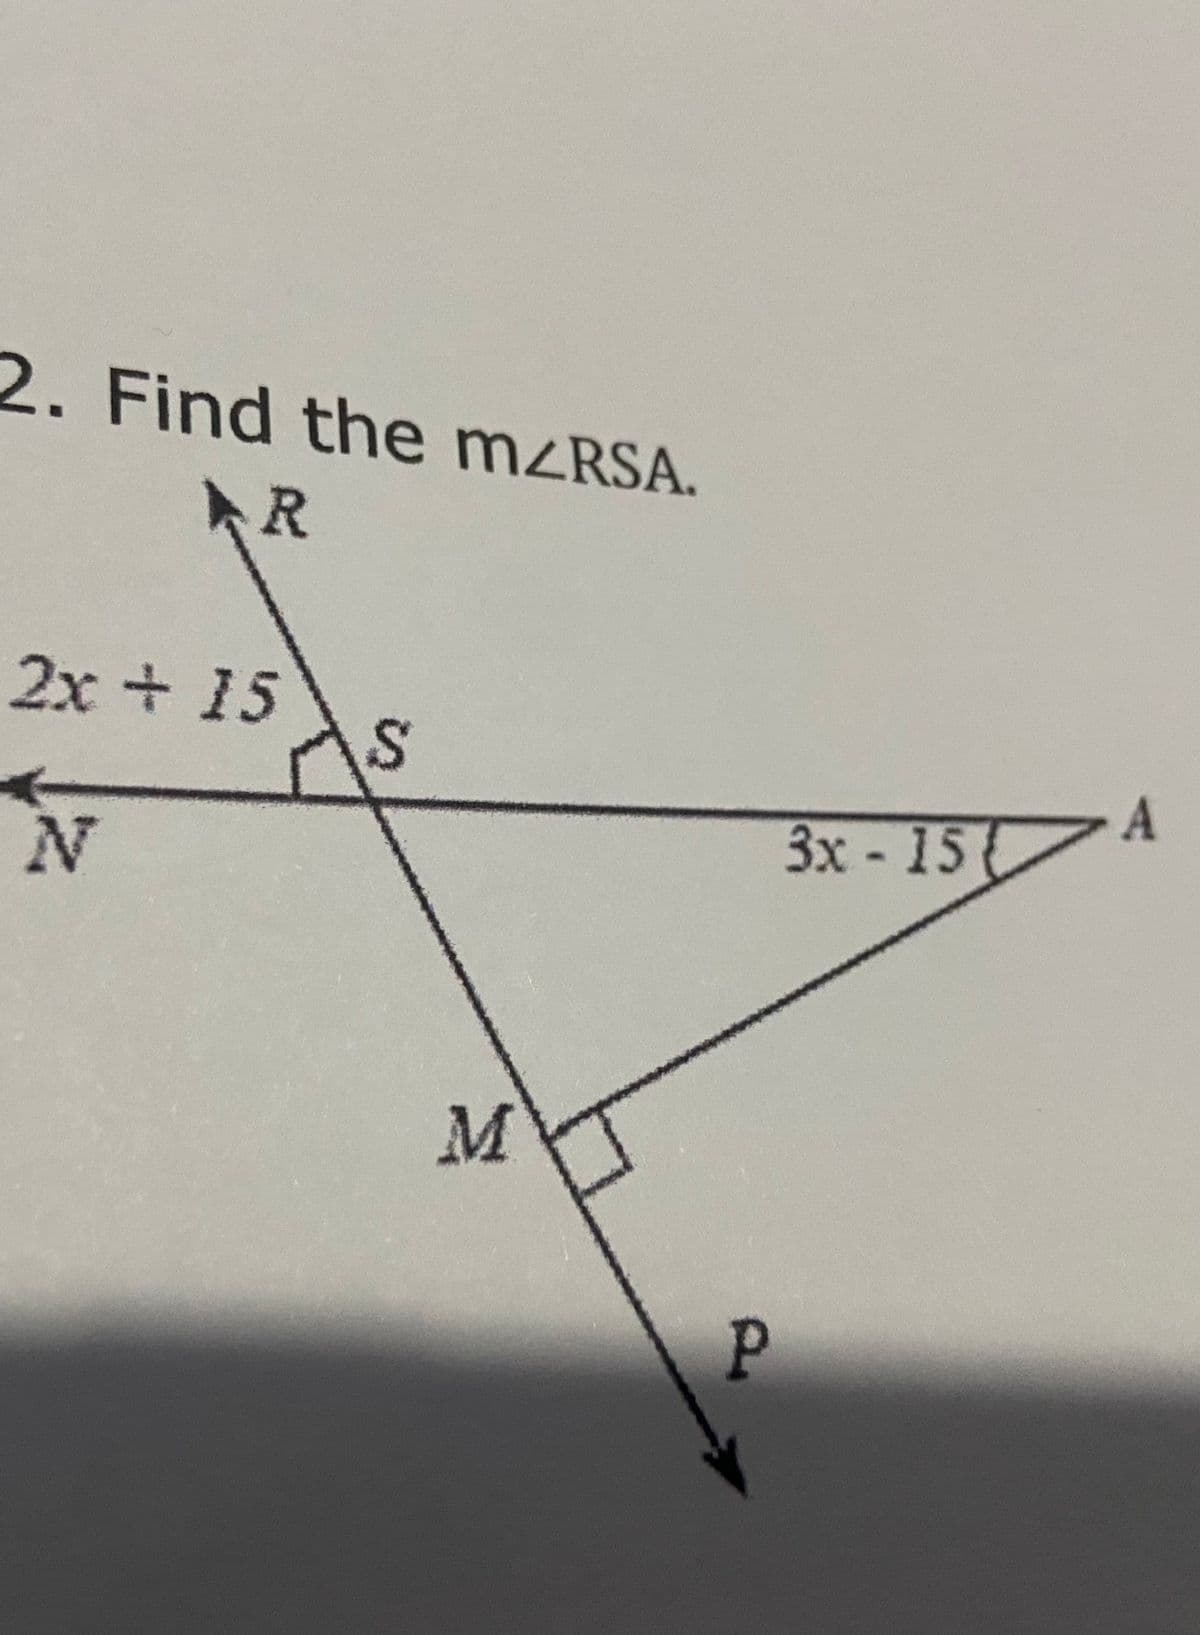 2. Find the MZRSA.
R
.
2x + 15
3x -15
